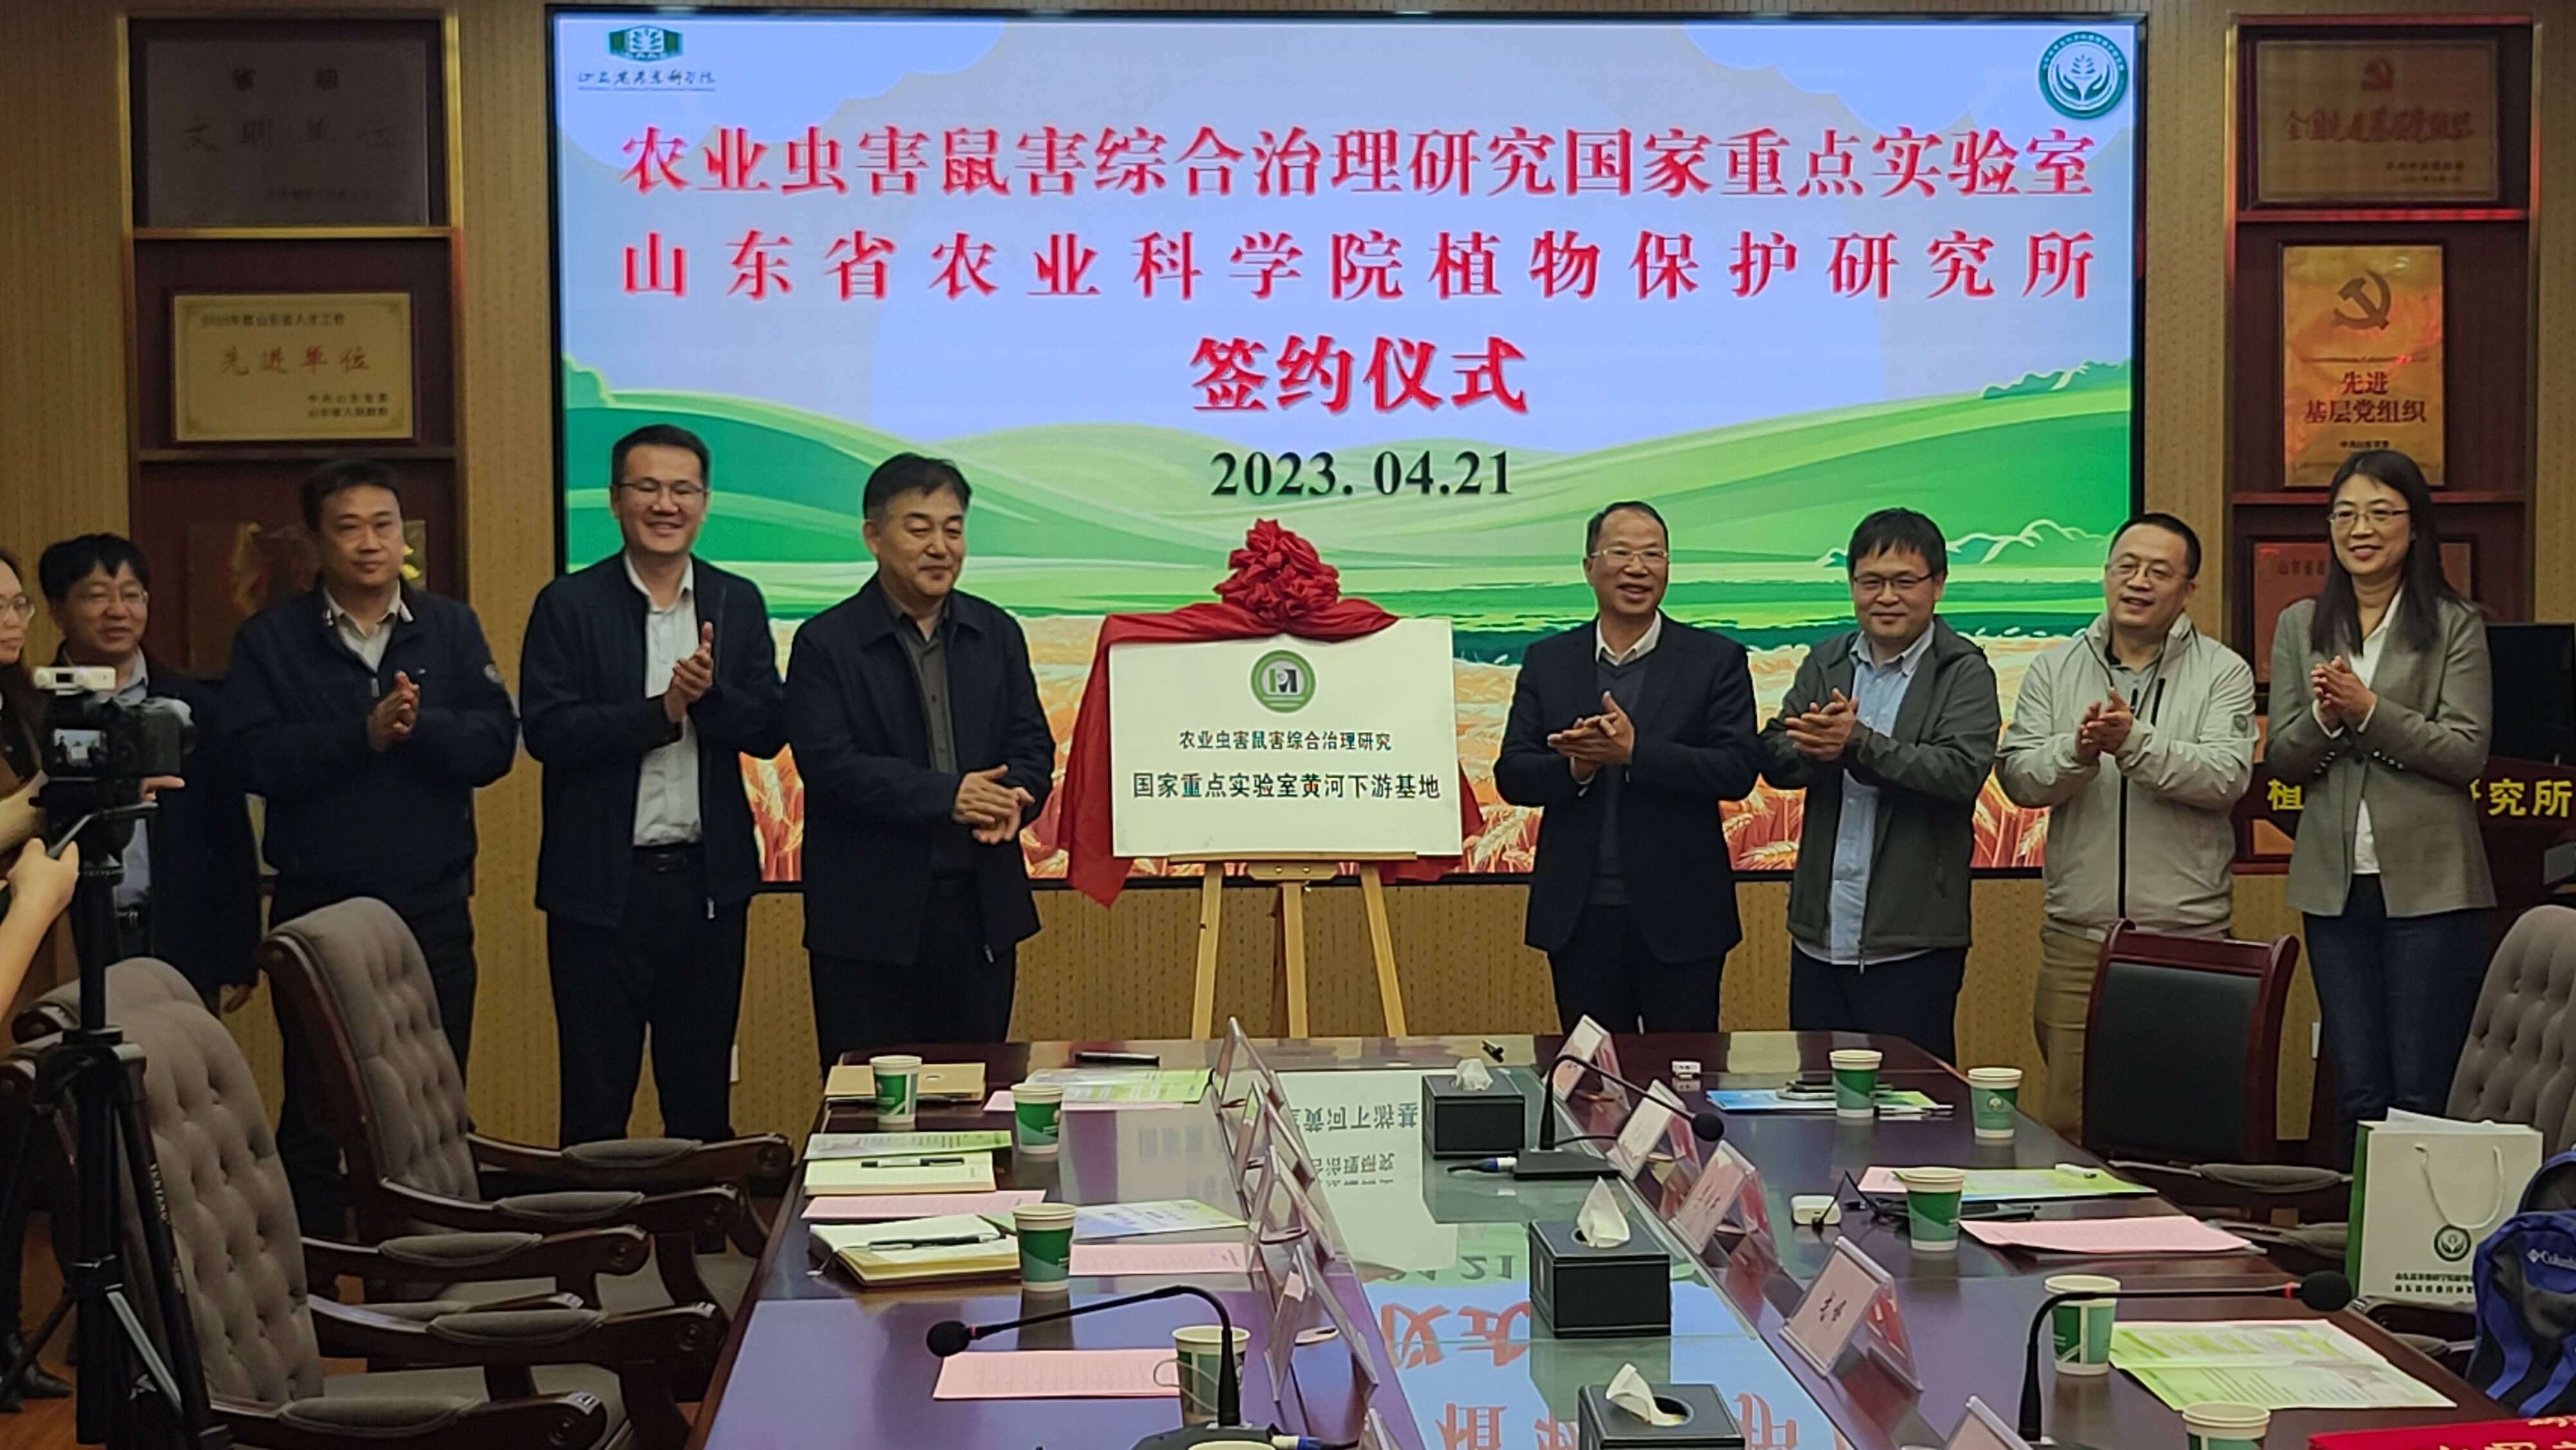 山东省农科院植物保护研究所与农业虫害鼠害综合治理研究国家重点实验室签署战略合作协议